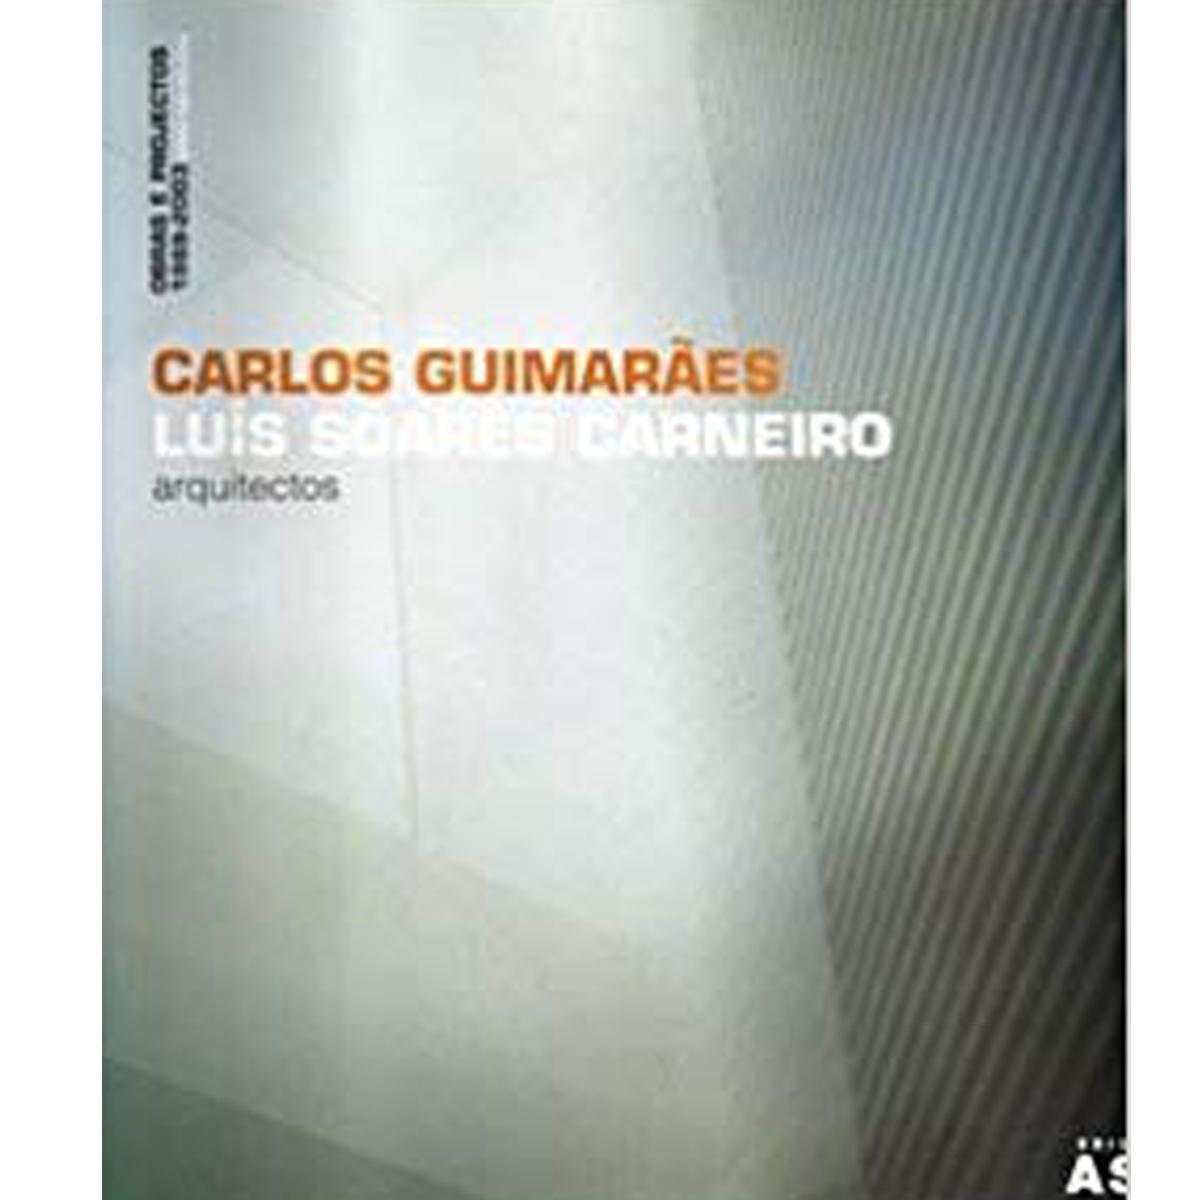 Carlos Guimarães & Luis Soares Carneiro